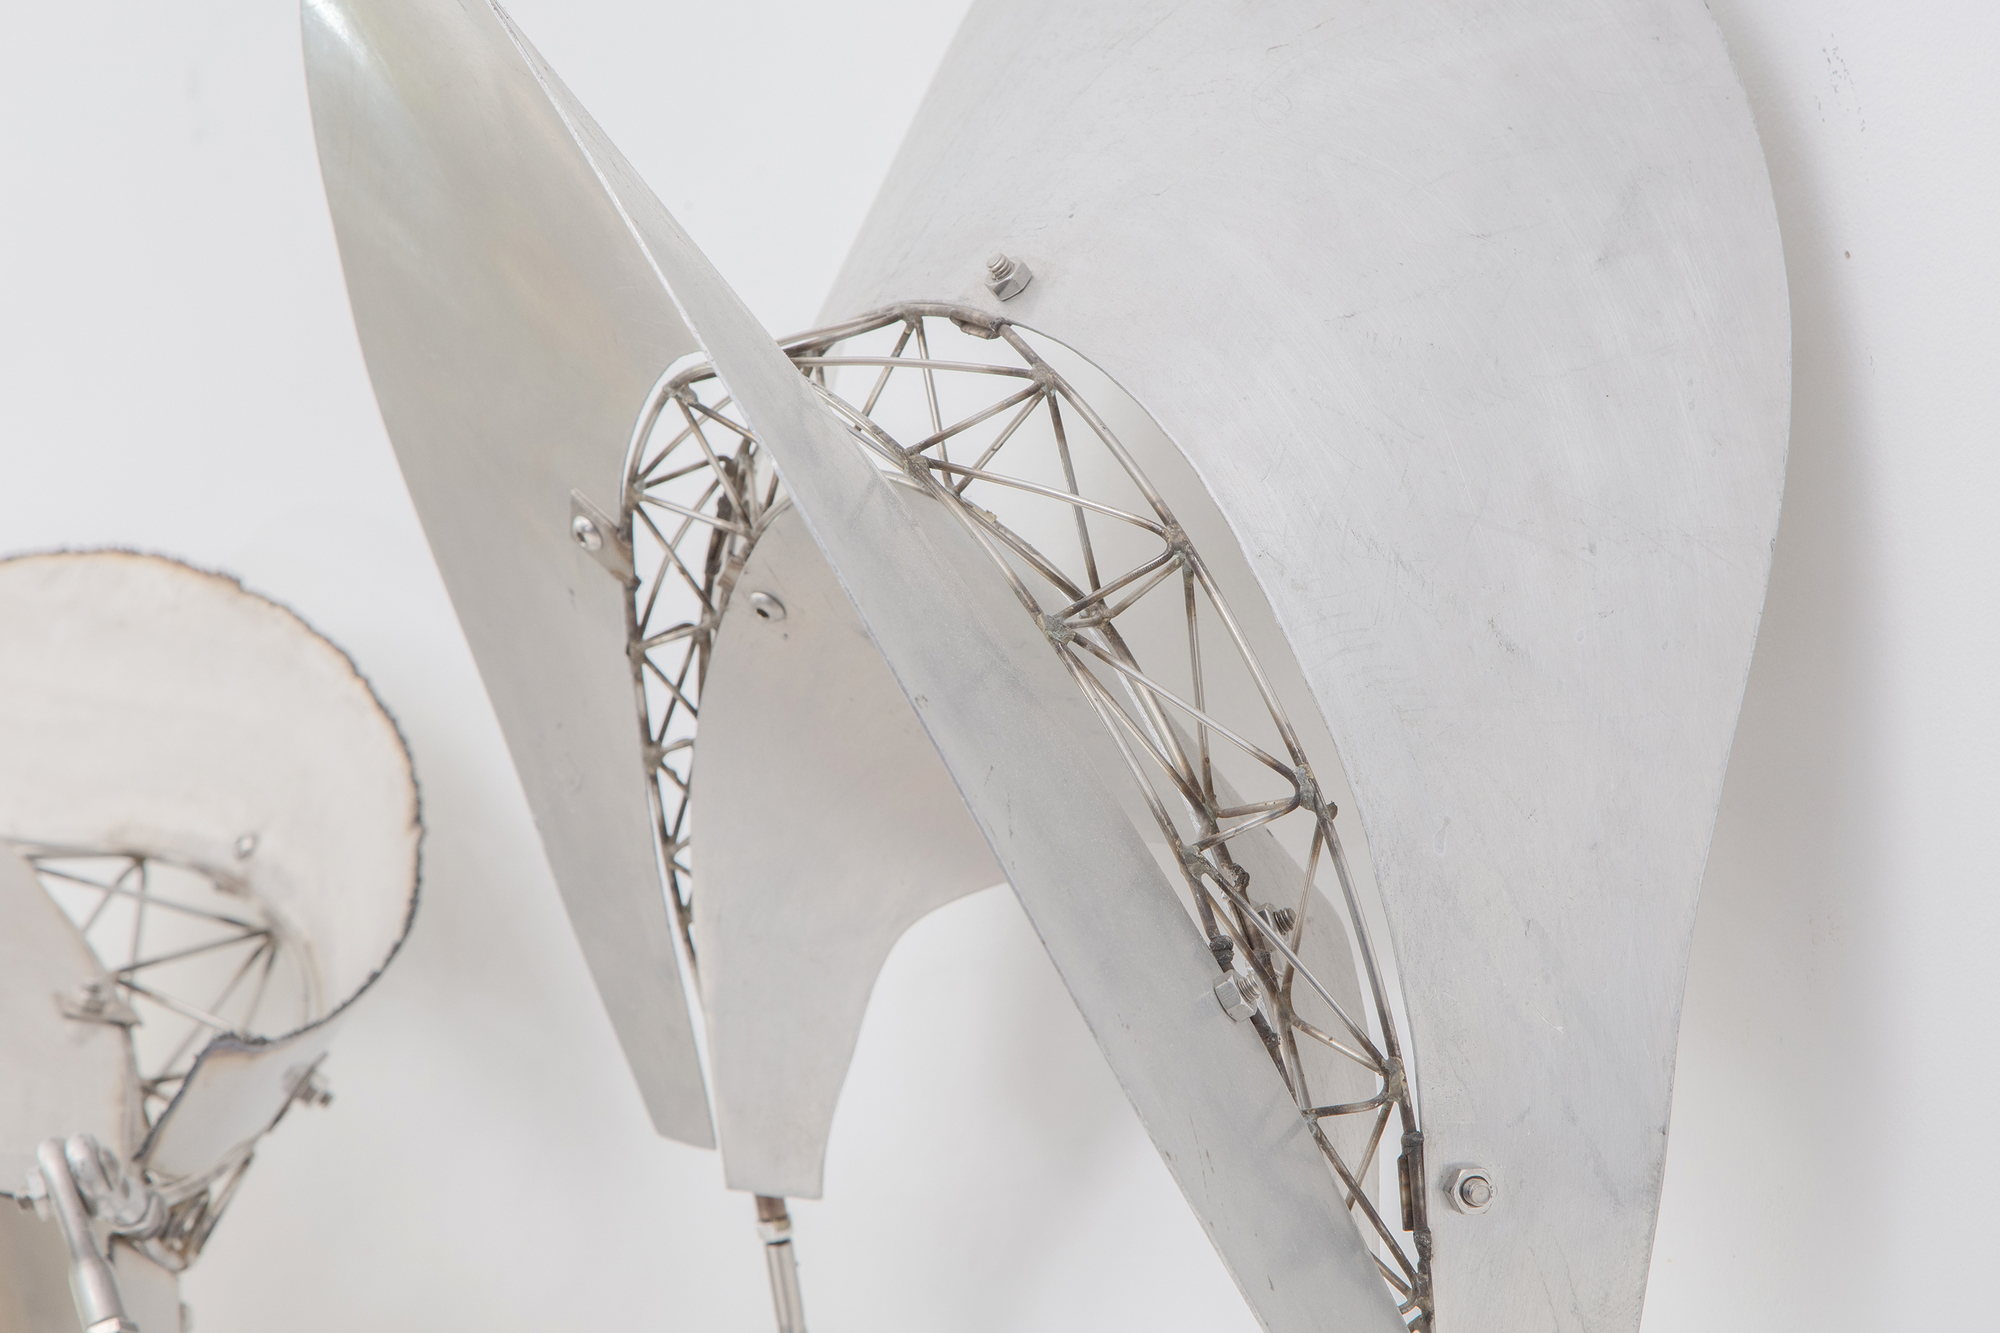 Frank Stellas Bali-Skulpturenserie zeichnet sich durch schwebende und fließende Formen aus, die sich in den Raum des Betrachters erstrecken und zur Interaktion zwischen dem Objekt und seiner Umgebung einladen. Der &quot;Dadap&quot;, eine Baumart, die in der balinesischen Kultur mit Wachstum und ritueller Bedeutung assoziiert wird, spiegelt die organische und dynamische Natur von Stellas Skulpturen wider. Mit dem Wechsel von Bambus zu Edelstahl und Aluminium hat Stella das Wesen der balinesischen Ästhetik bewahrt, die organische, fließende Formen preist, die sich dynamisch mit ihrem Raum verbinden. Dadap stellt eine Kontinuität in Stellas thematischer Erkundung dar, bei der der Geist seiner Arbeit über die Materialität hinausgeht. Metall bietet eine andere Textur, ein anderes Reflexionsvermögen und eine andere Interaktion mit Licht und Raum, hält aber dennoch an den Prinzipien von Bewegung und Interaktivität fest. Es handelt sich um eine kreative Übertragung von Form und Konzept über verschiedene Medien hinweg, wobei der Geist der ursprünglichen Inspiration beibehalten wird, während die Eigenschaften des neuen Materials diese Ideen in einem neuen Kontext zum Ausdruck bringen können.